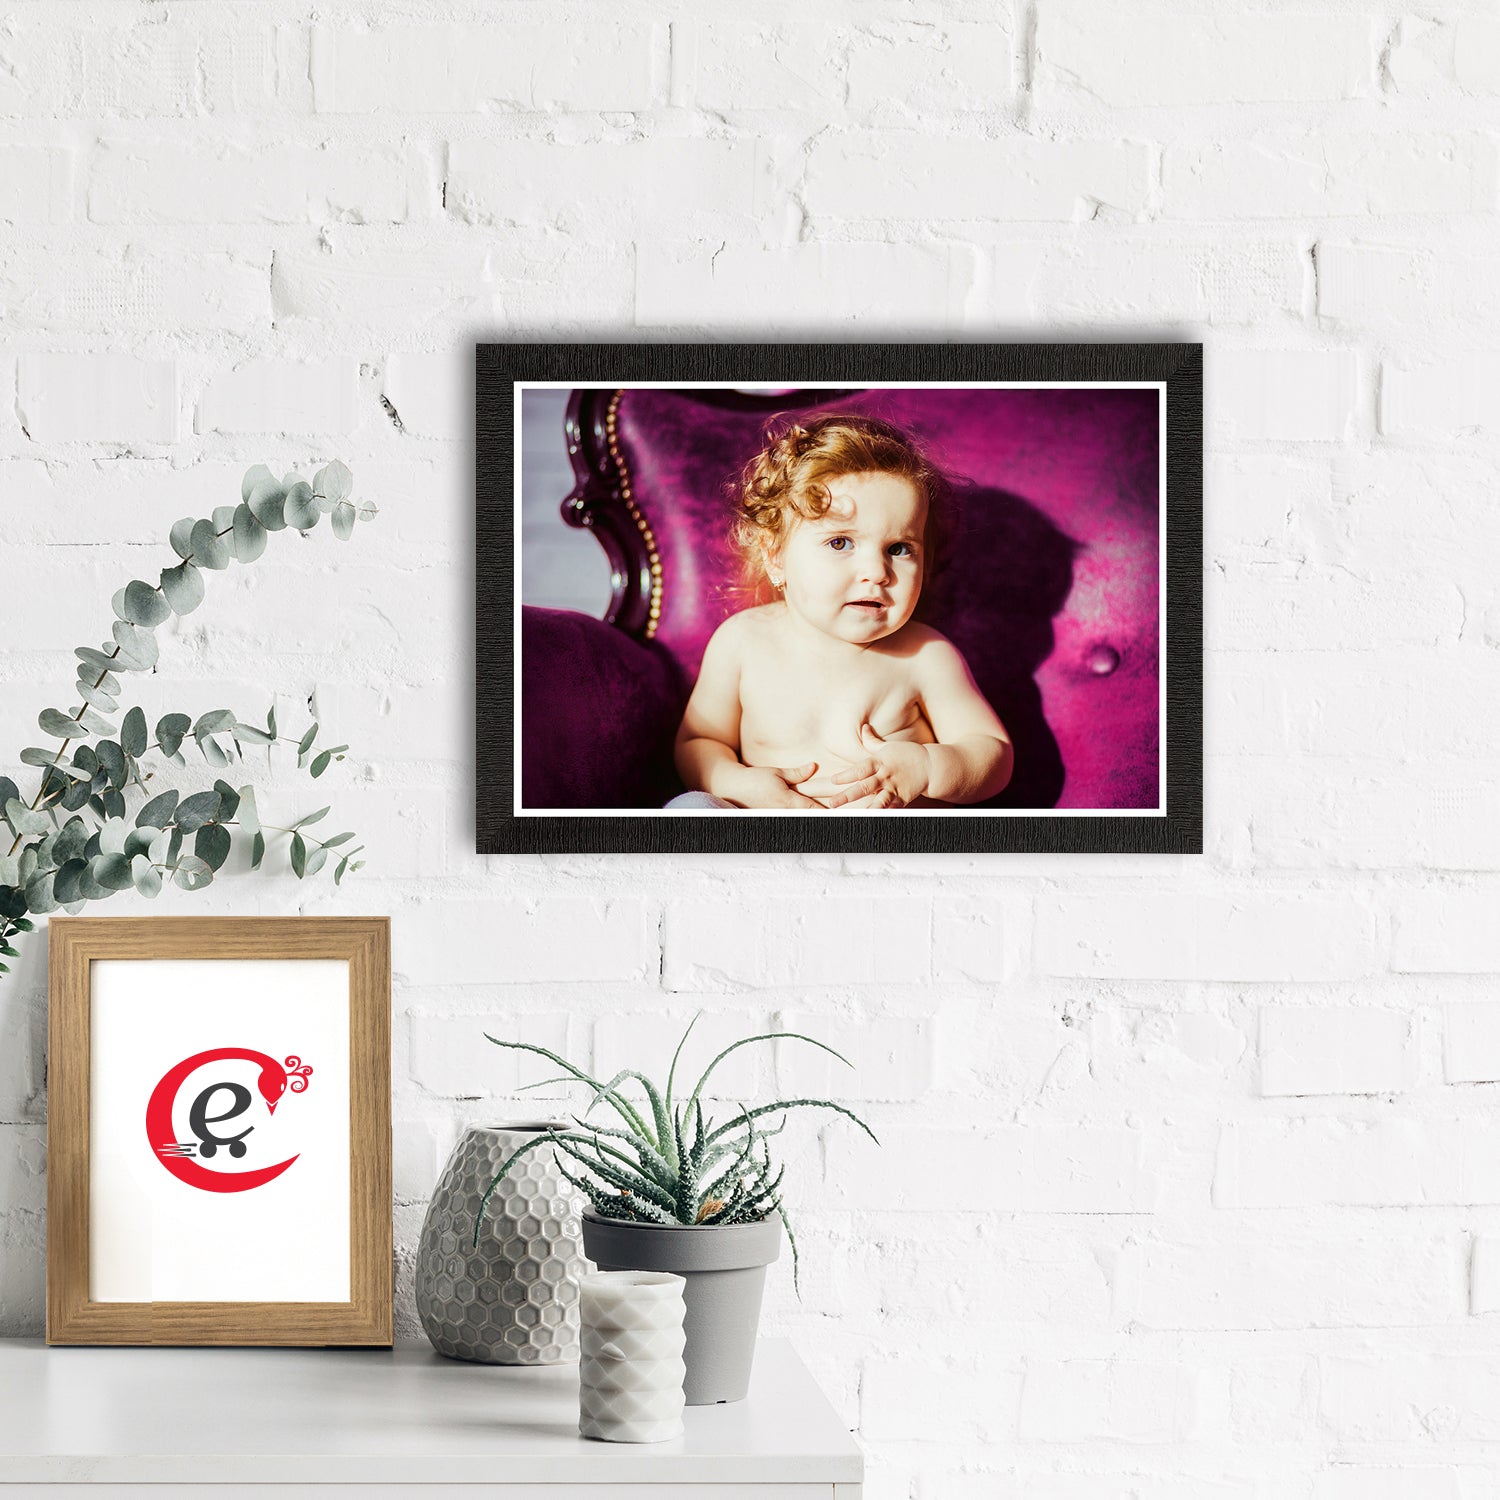 Cute Baby Painting Digital Printed Wall Art 1